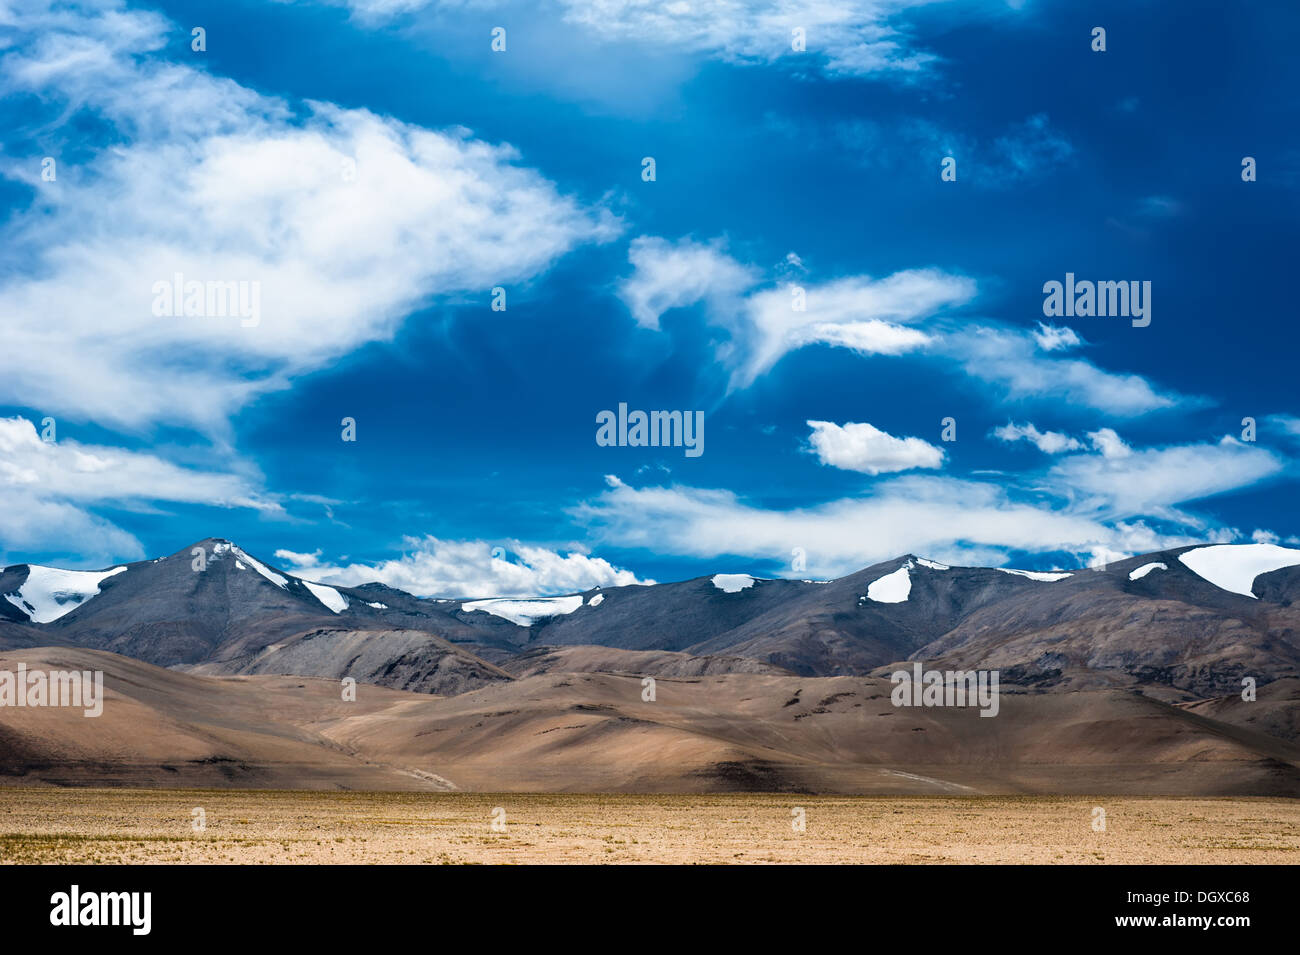 Himalaya Hochgebirge Landschaft Panorama mit blauen Wolkenhimmel. Indien, Ladakh, in der Nähe von salt Lake Tso Kar, 4600 m Höhe Stockfoto